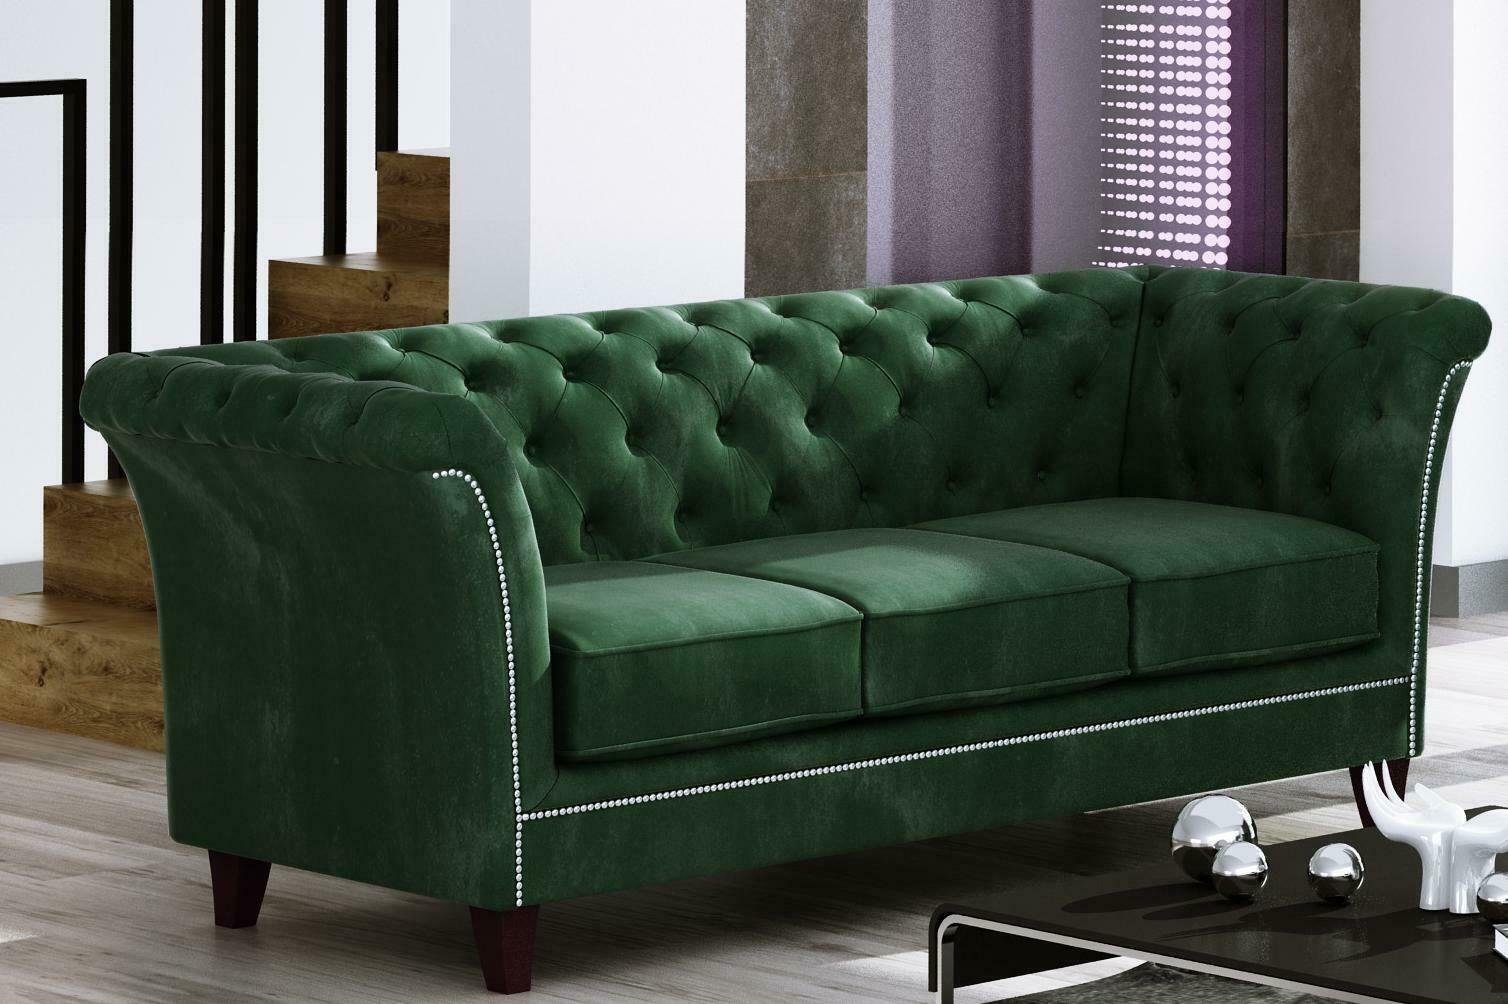 Couch in Made Europe Hellgrün Grüner Luxus Edel 3-Sitzer Möbel Chesterfield Sofa Neu, Dreisitzer JVmoebel